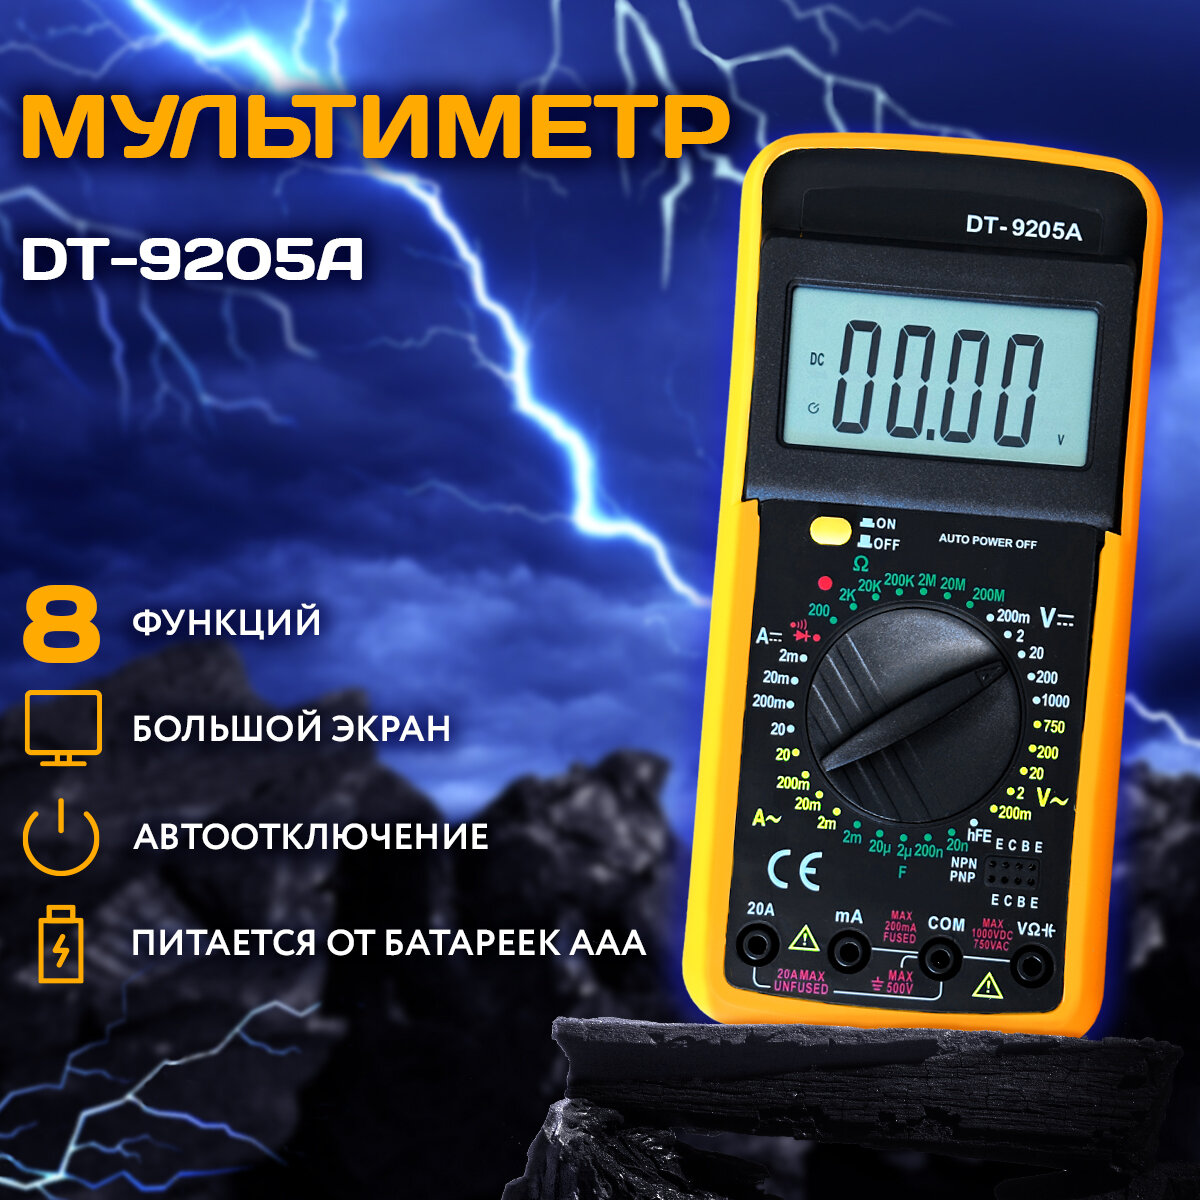 Мультиметр цифровой DT-9205А